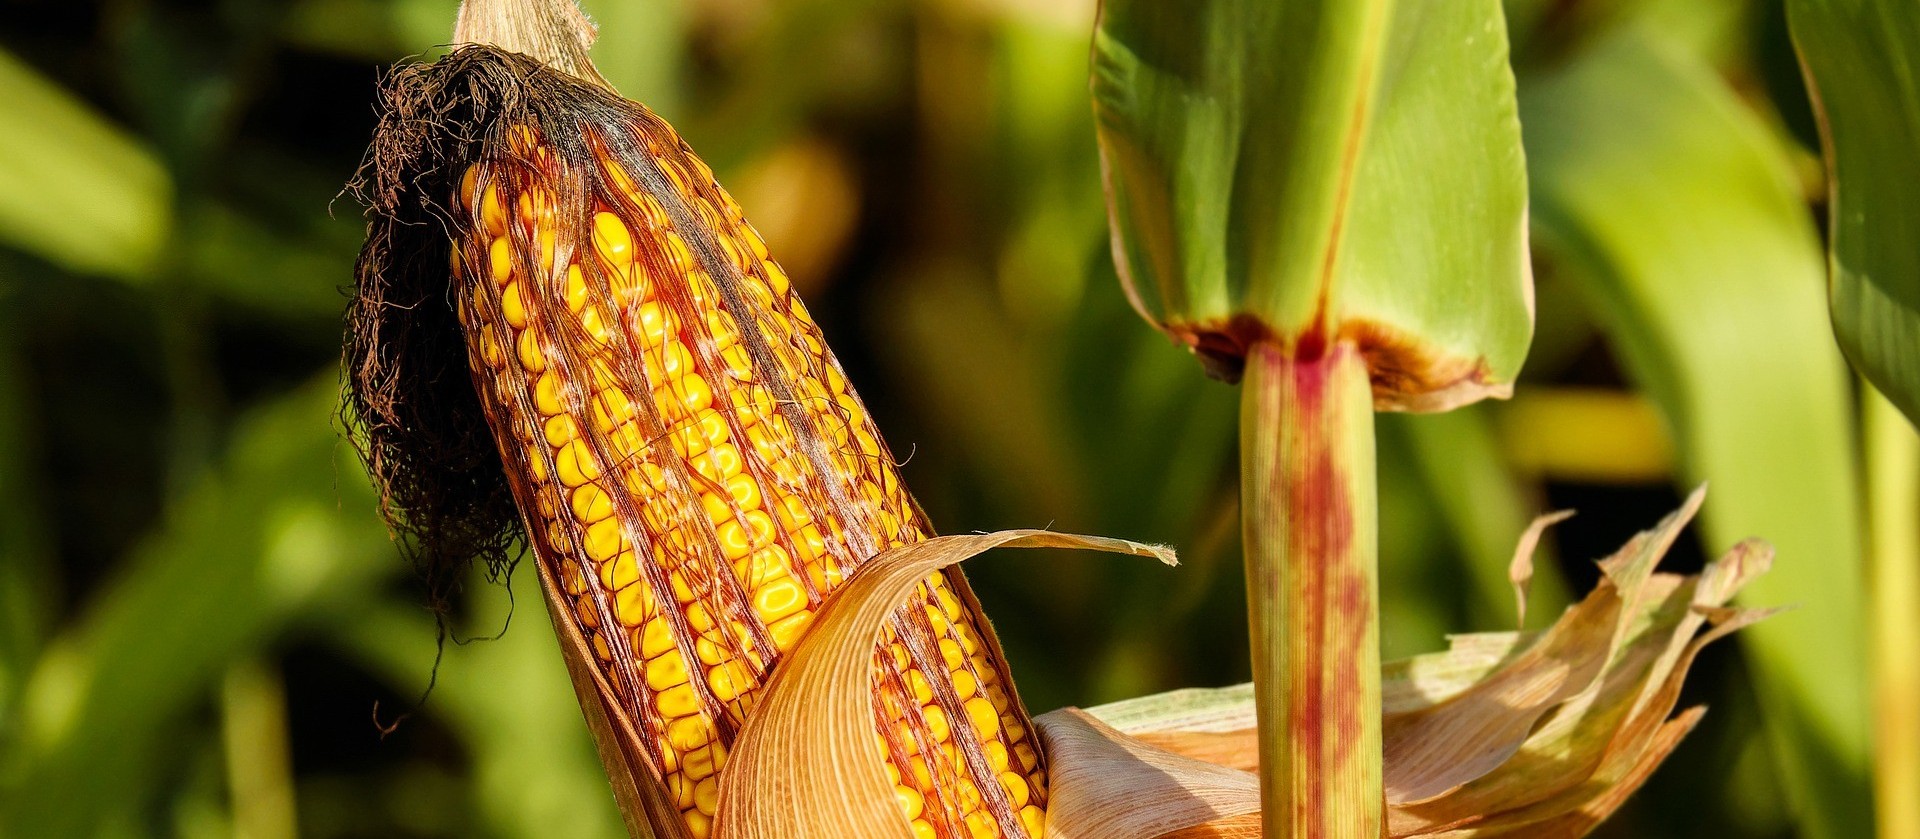 USDA vê safras recorde de milho e soja no Brasil em 2020/21